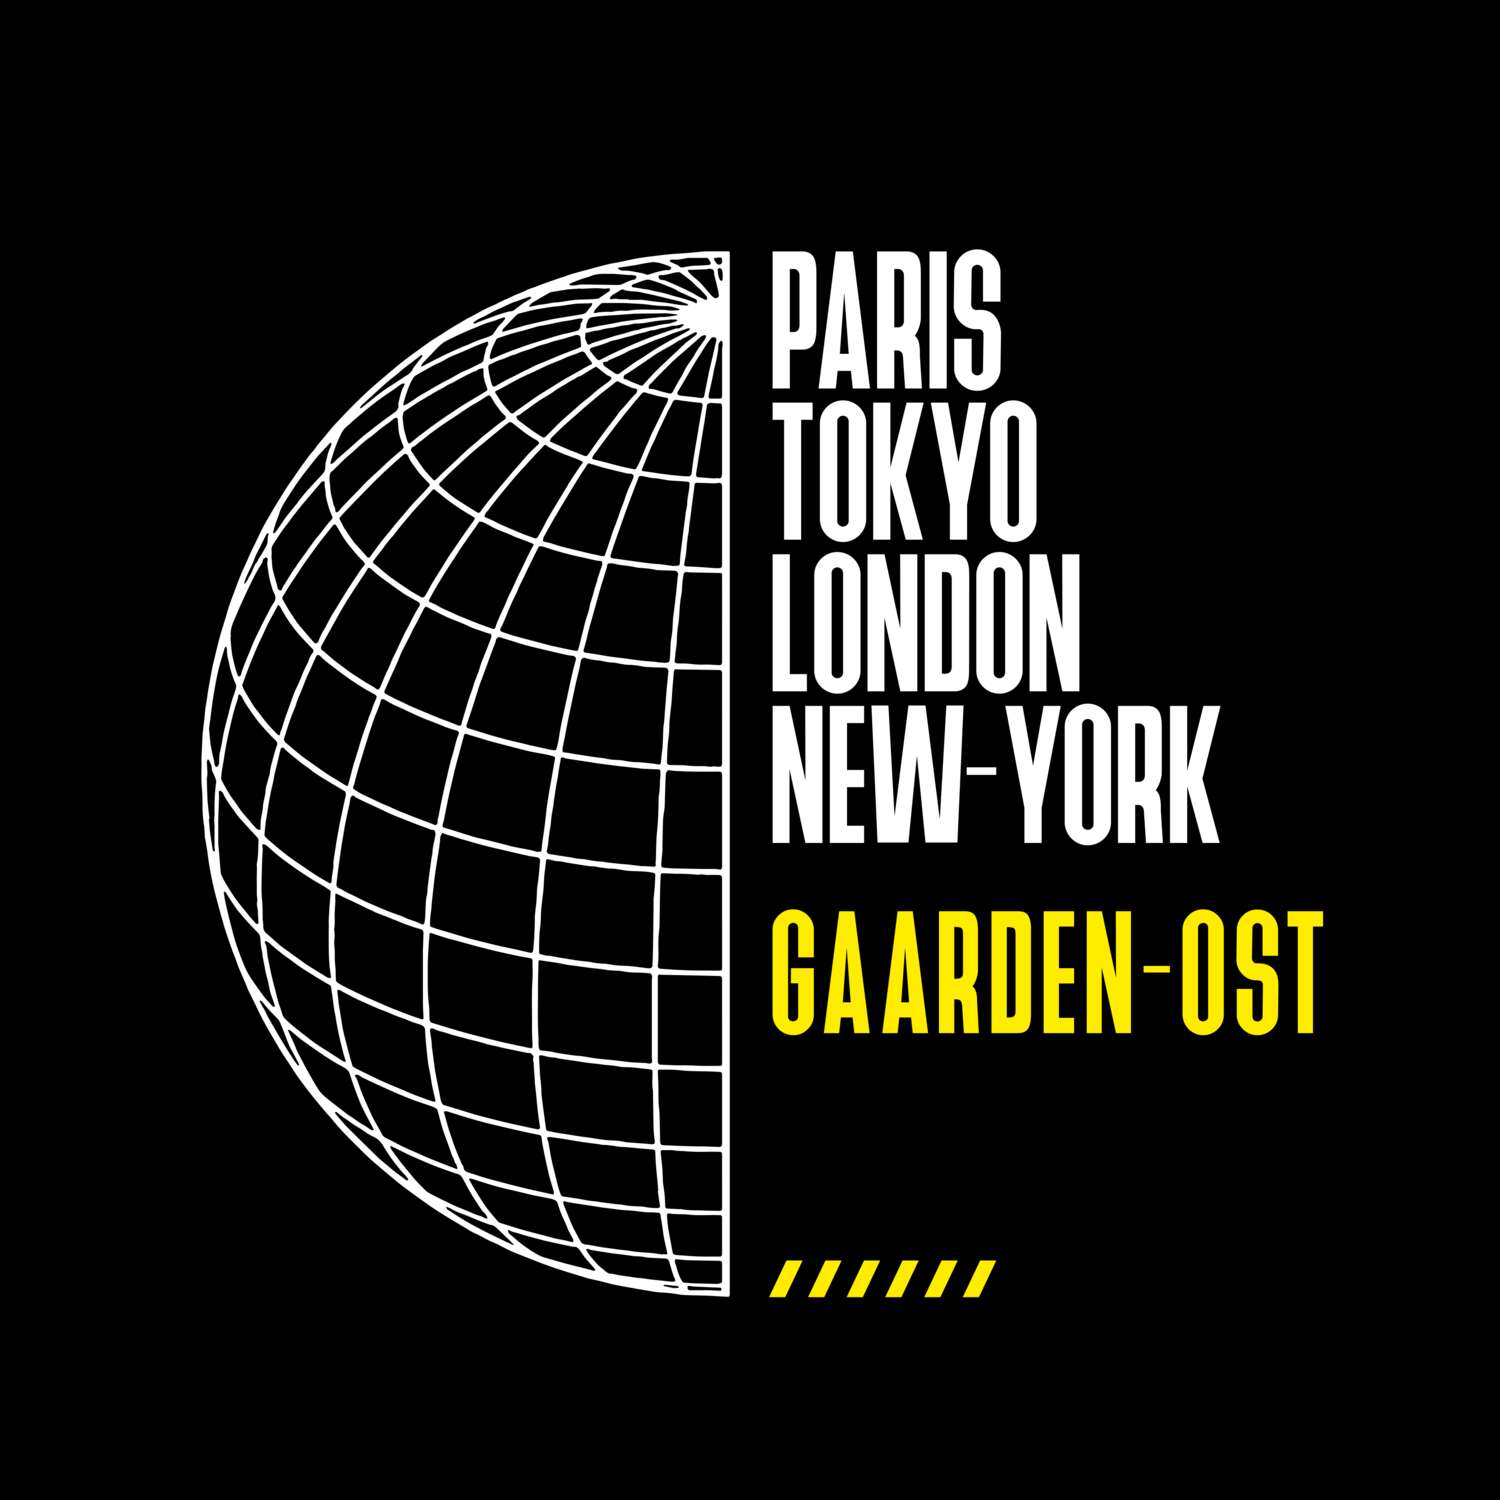 Gaarden-Ost T-Shirt »Paris Tokyo London«